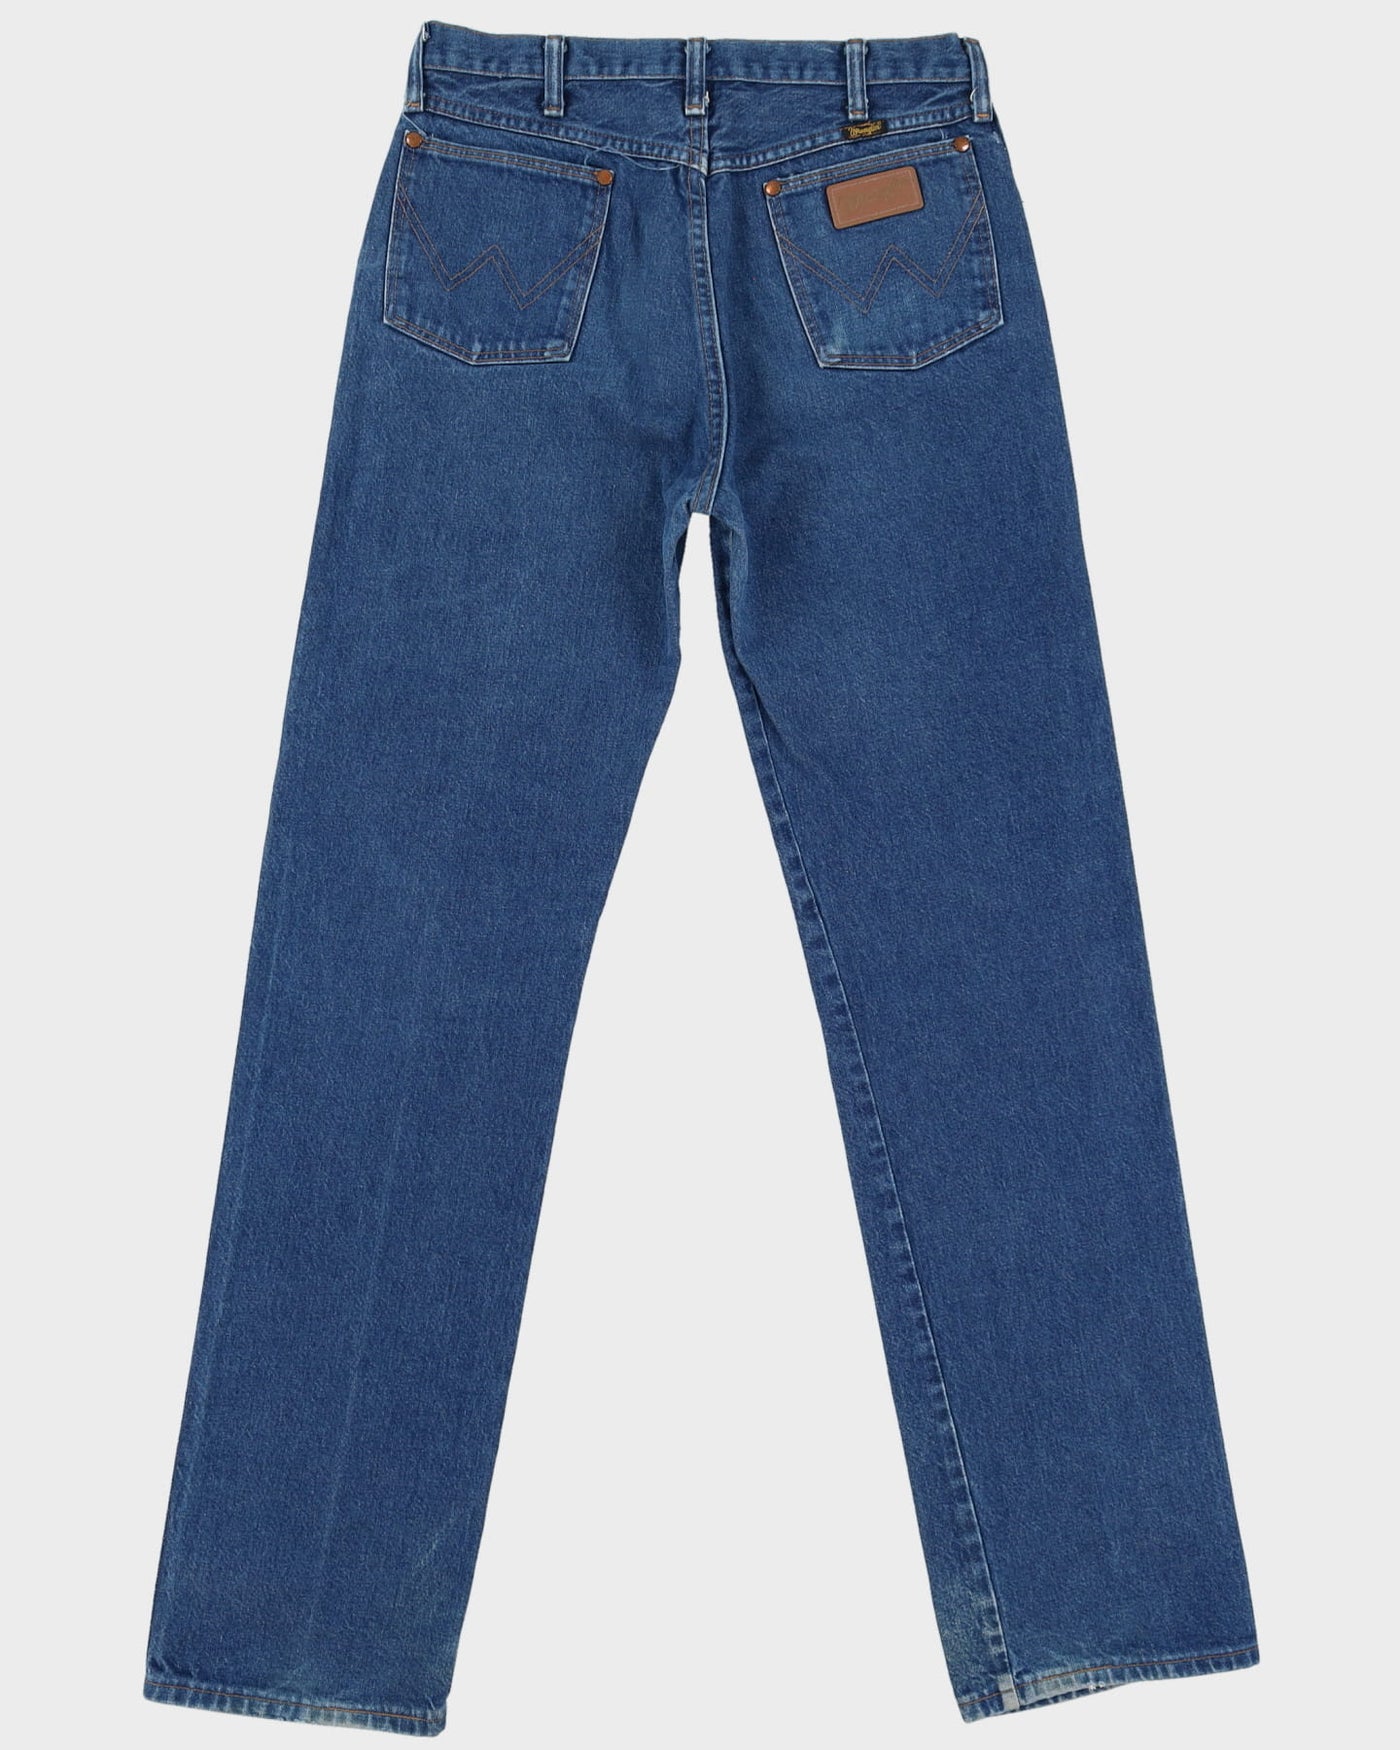 Vintage 80s Wrangler Light Wash Blue Jeans - W31 L35